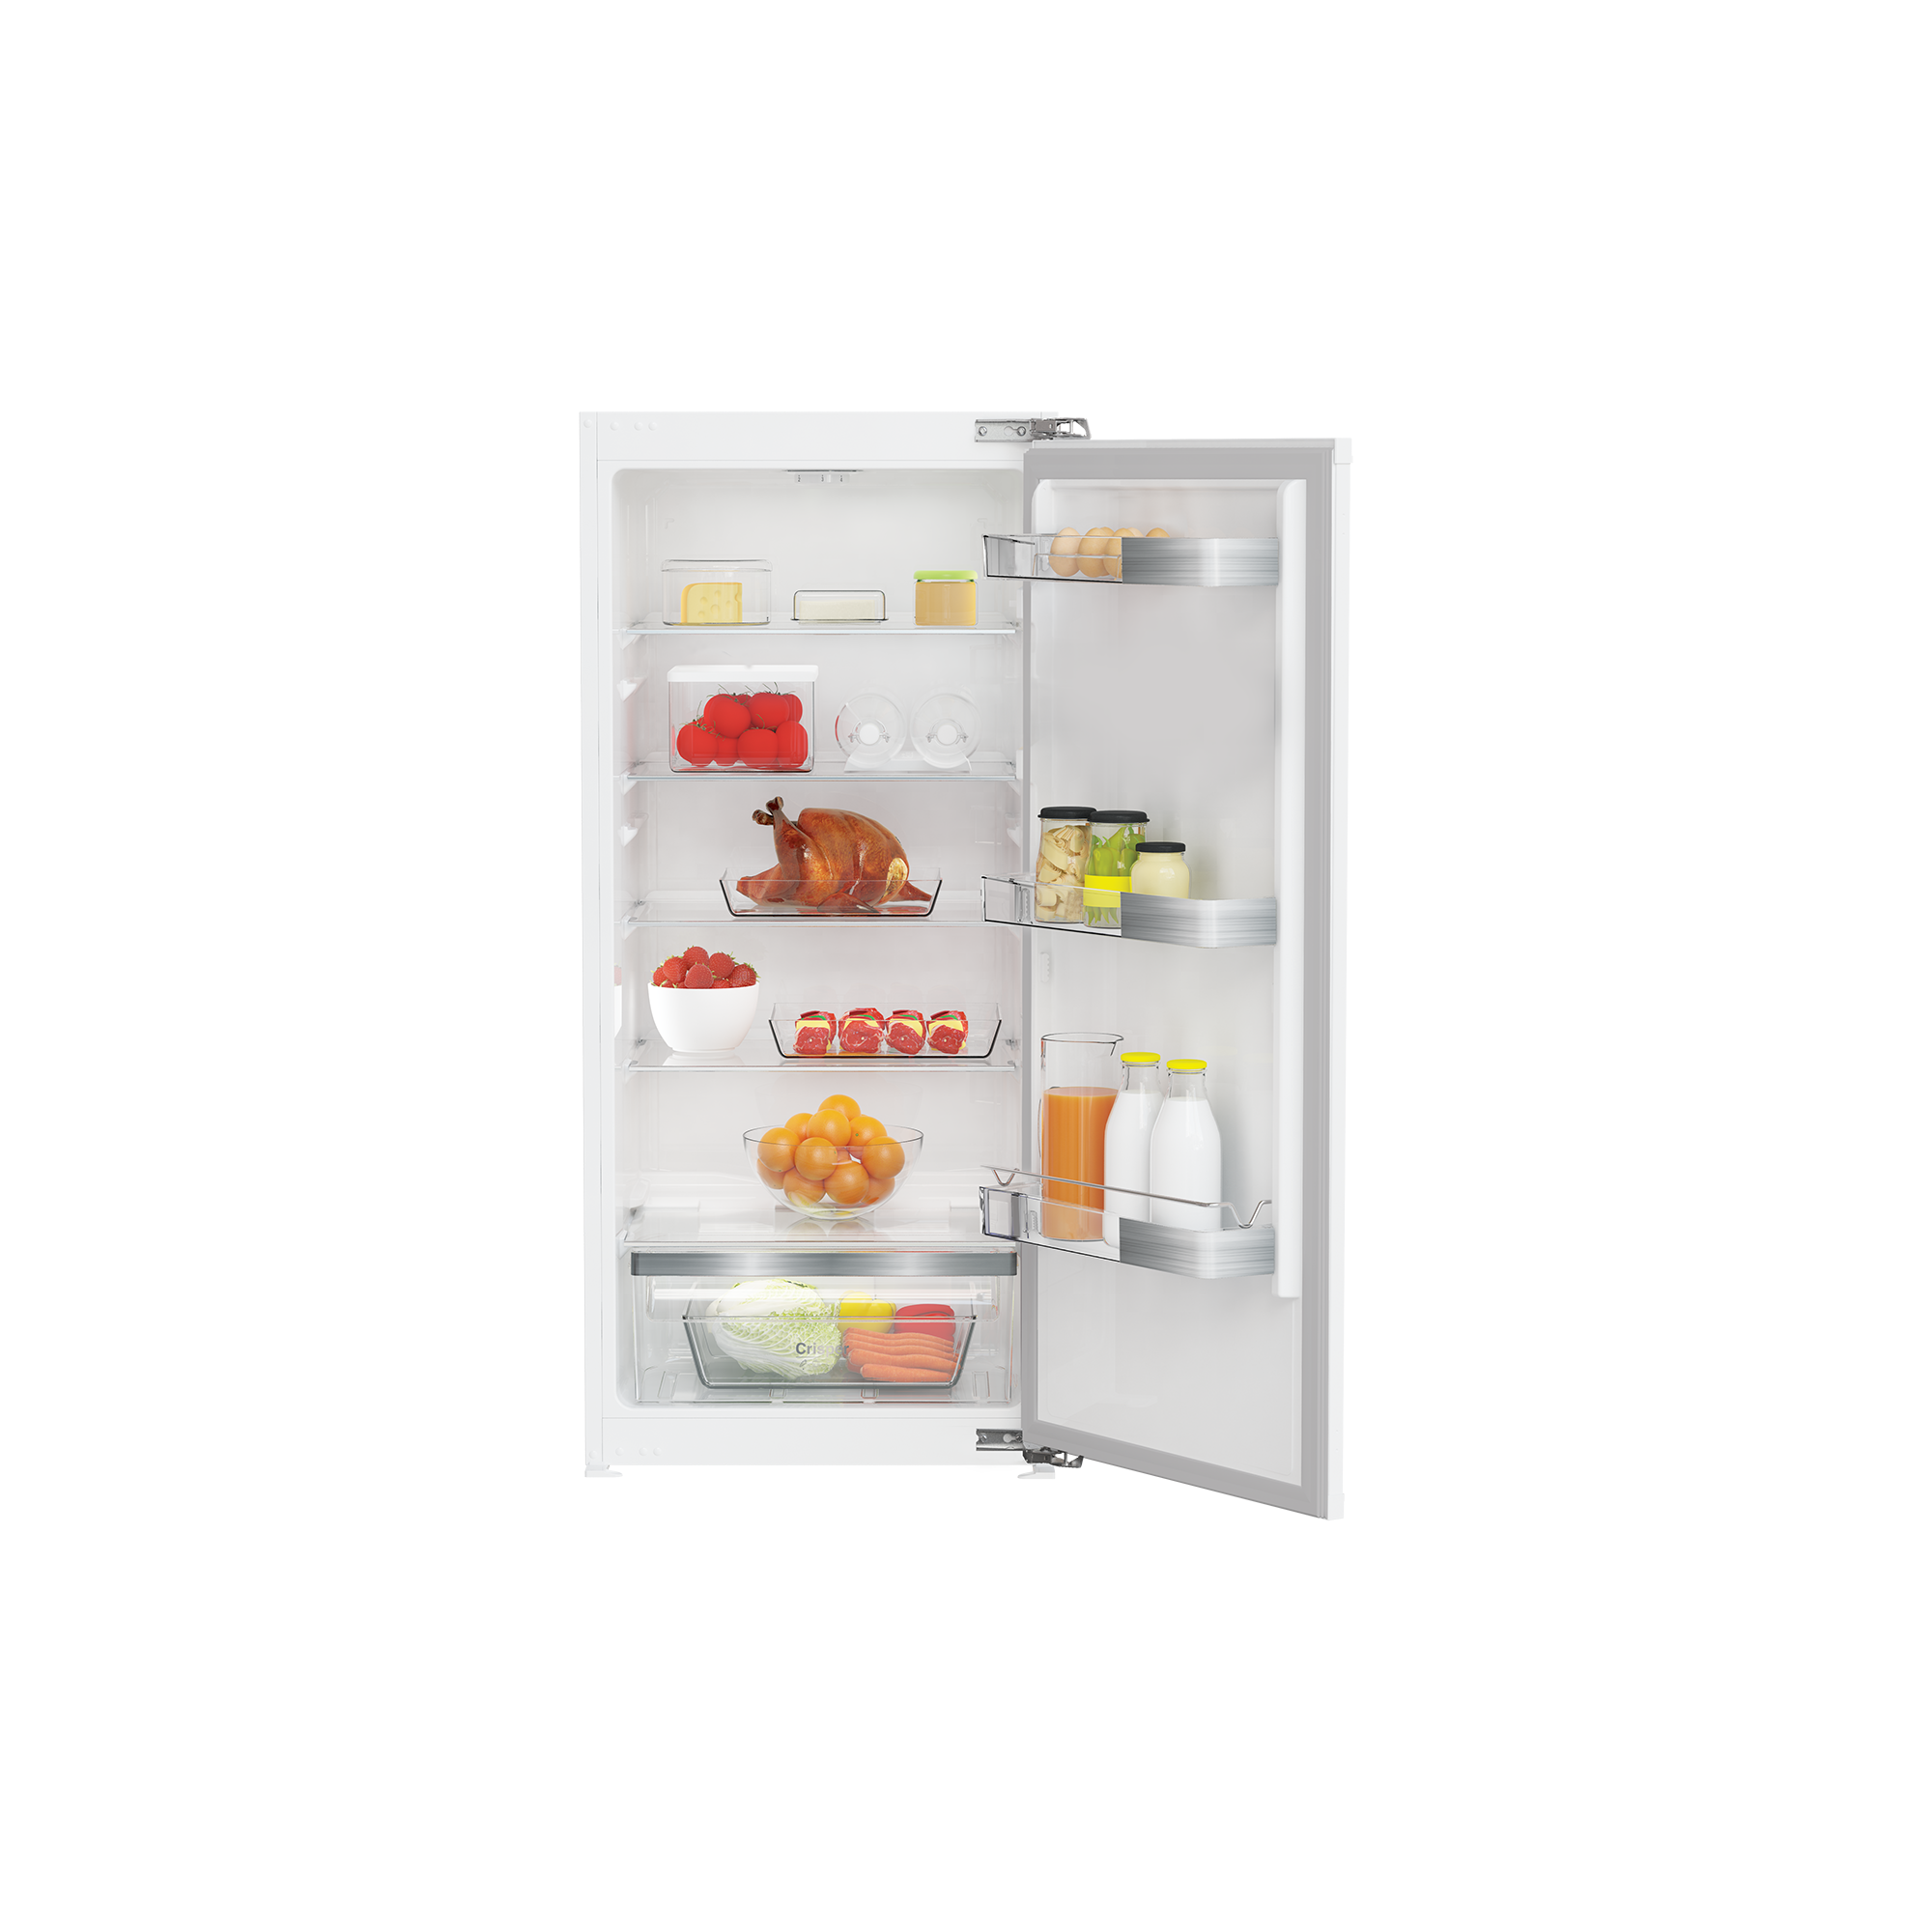 GSMI10341FN - Kühlschrank - jetzt kaufen | Kühlen & Gefrieren | Grundig